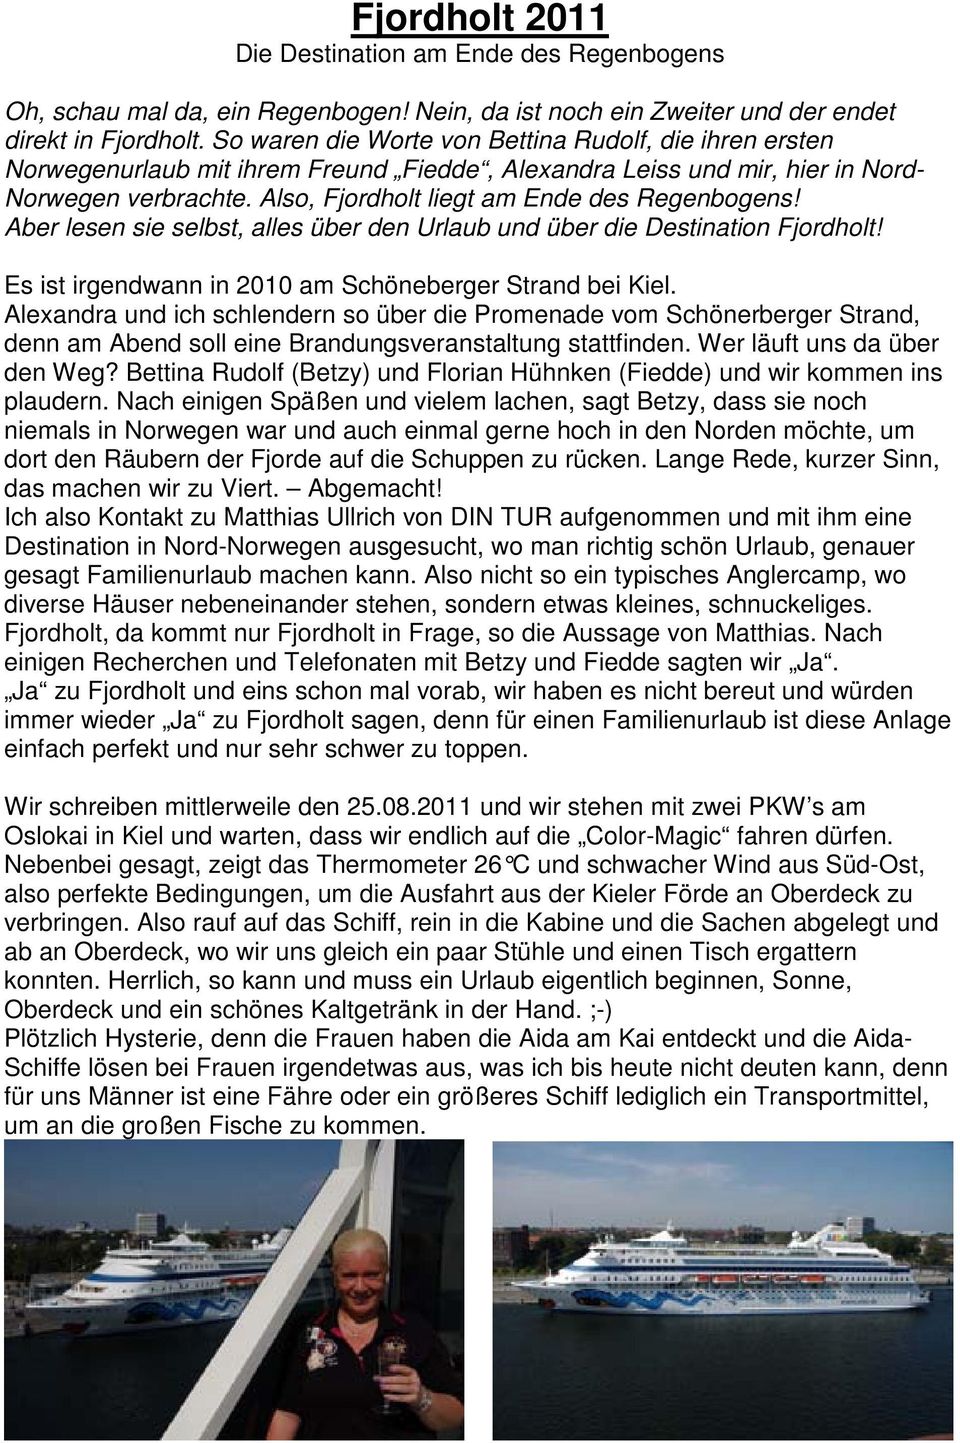 Also, Fjordholt liegt am Ende des Regenbogens! Aber lesen sie selbst, alles über den Urlaub und über die Destination Fjordholt! Es ist irgendwann in 2010 am Schöneberger Strand bei Kiel.